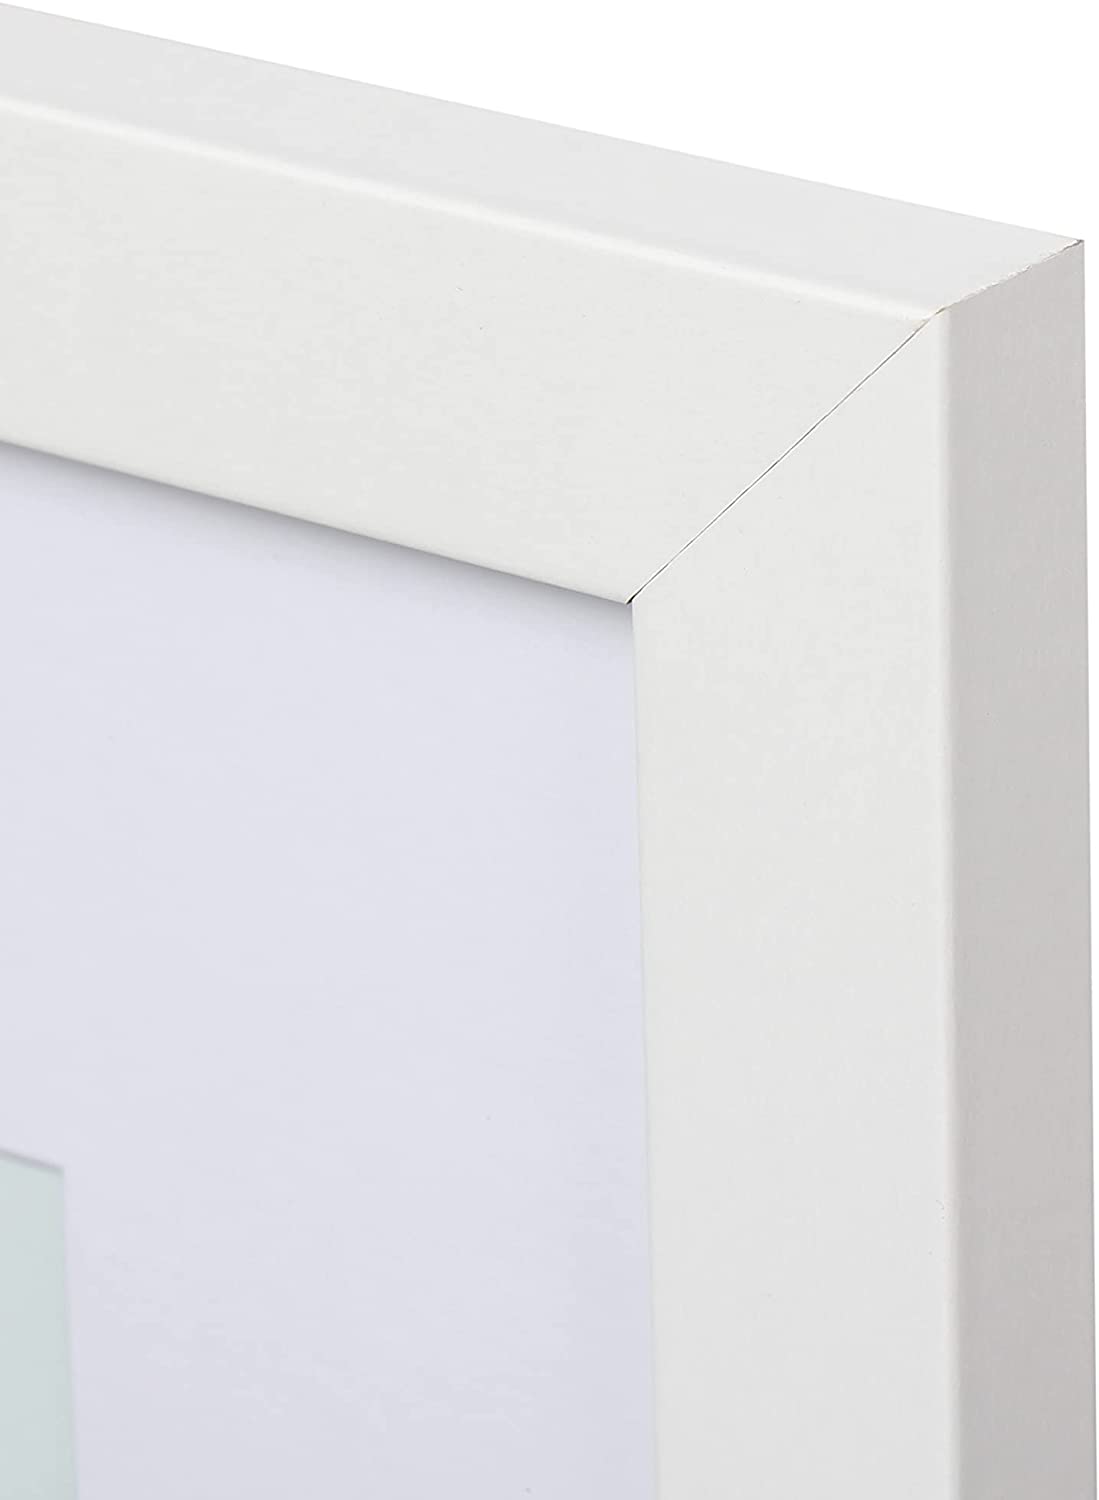 Framed Print - White Matte Frame - Medium - 16×24